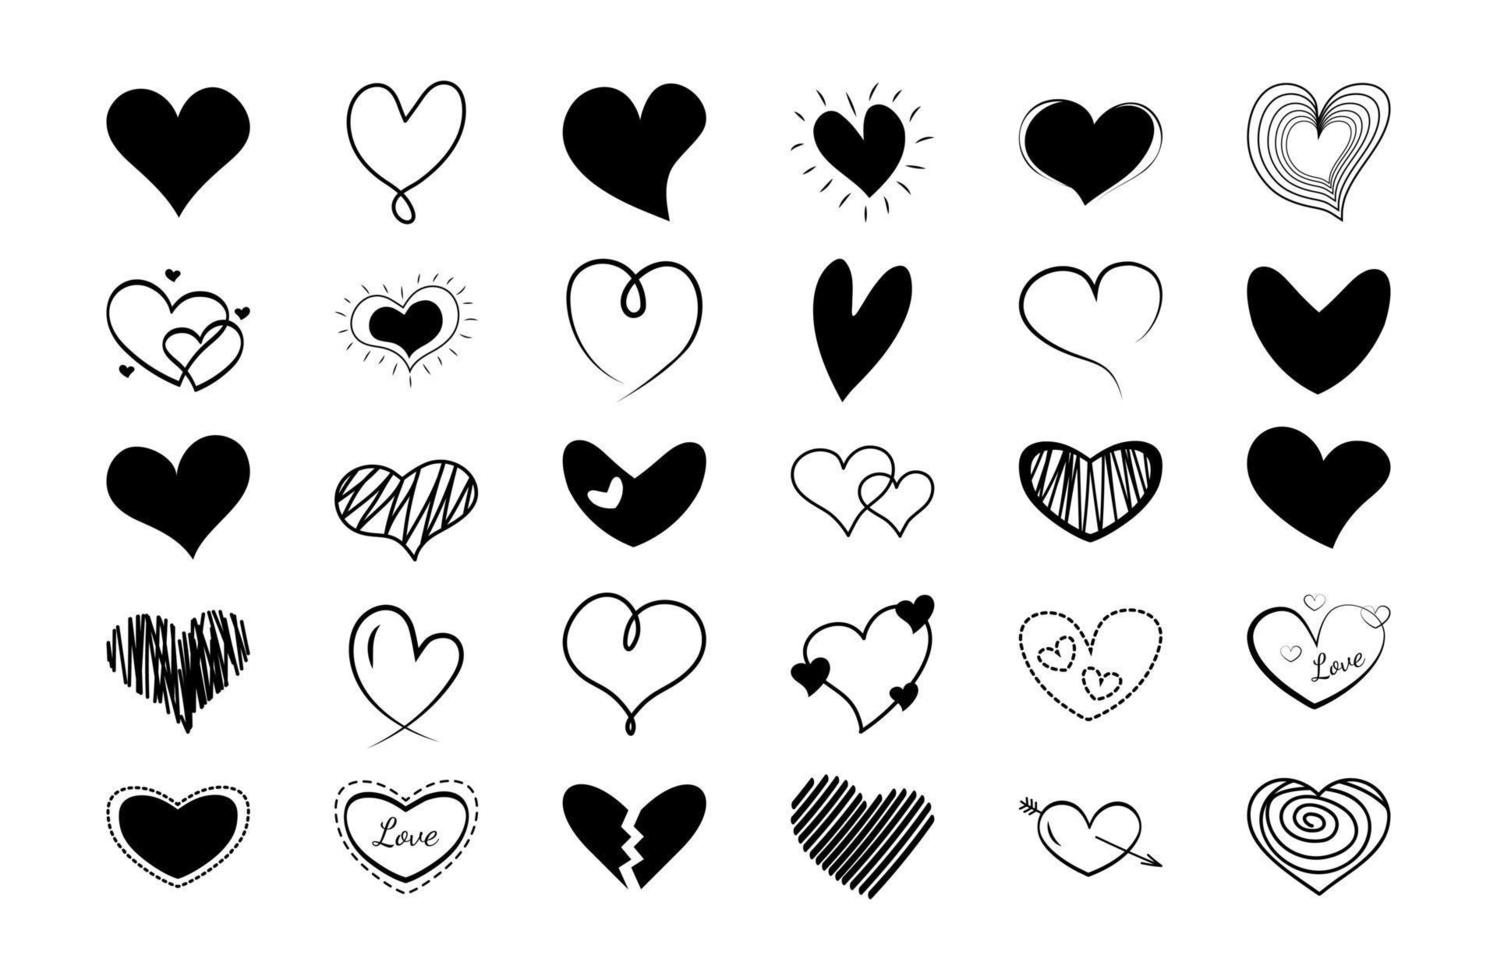 conjunto de corazones de garabatos garabatos. corazones negros dibujados a mano de diferentes formas y colores. vector